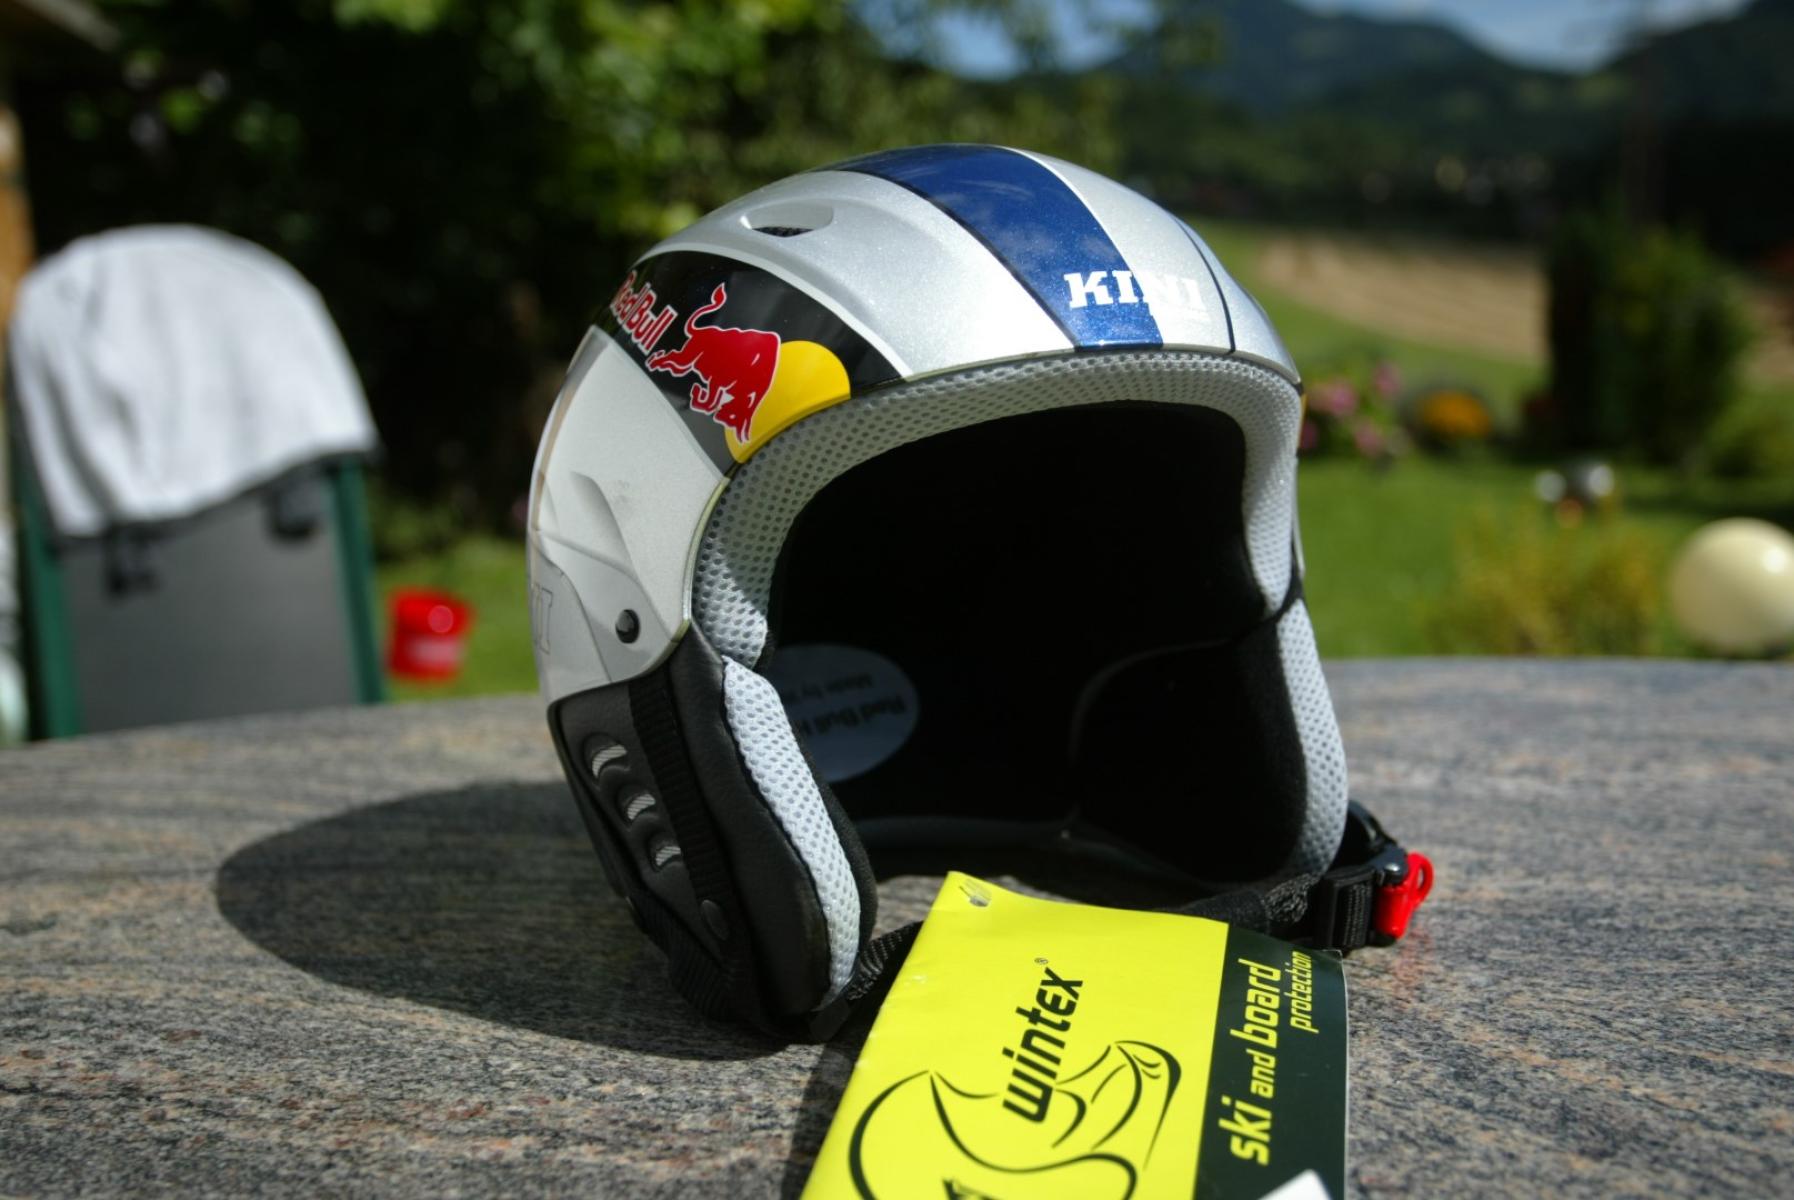 Red Bull Schi Ski Helm Gr. XS 54cm, € 49,- (8130 Frohnleiten)